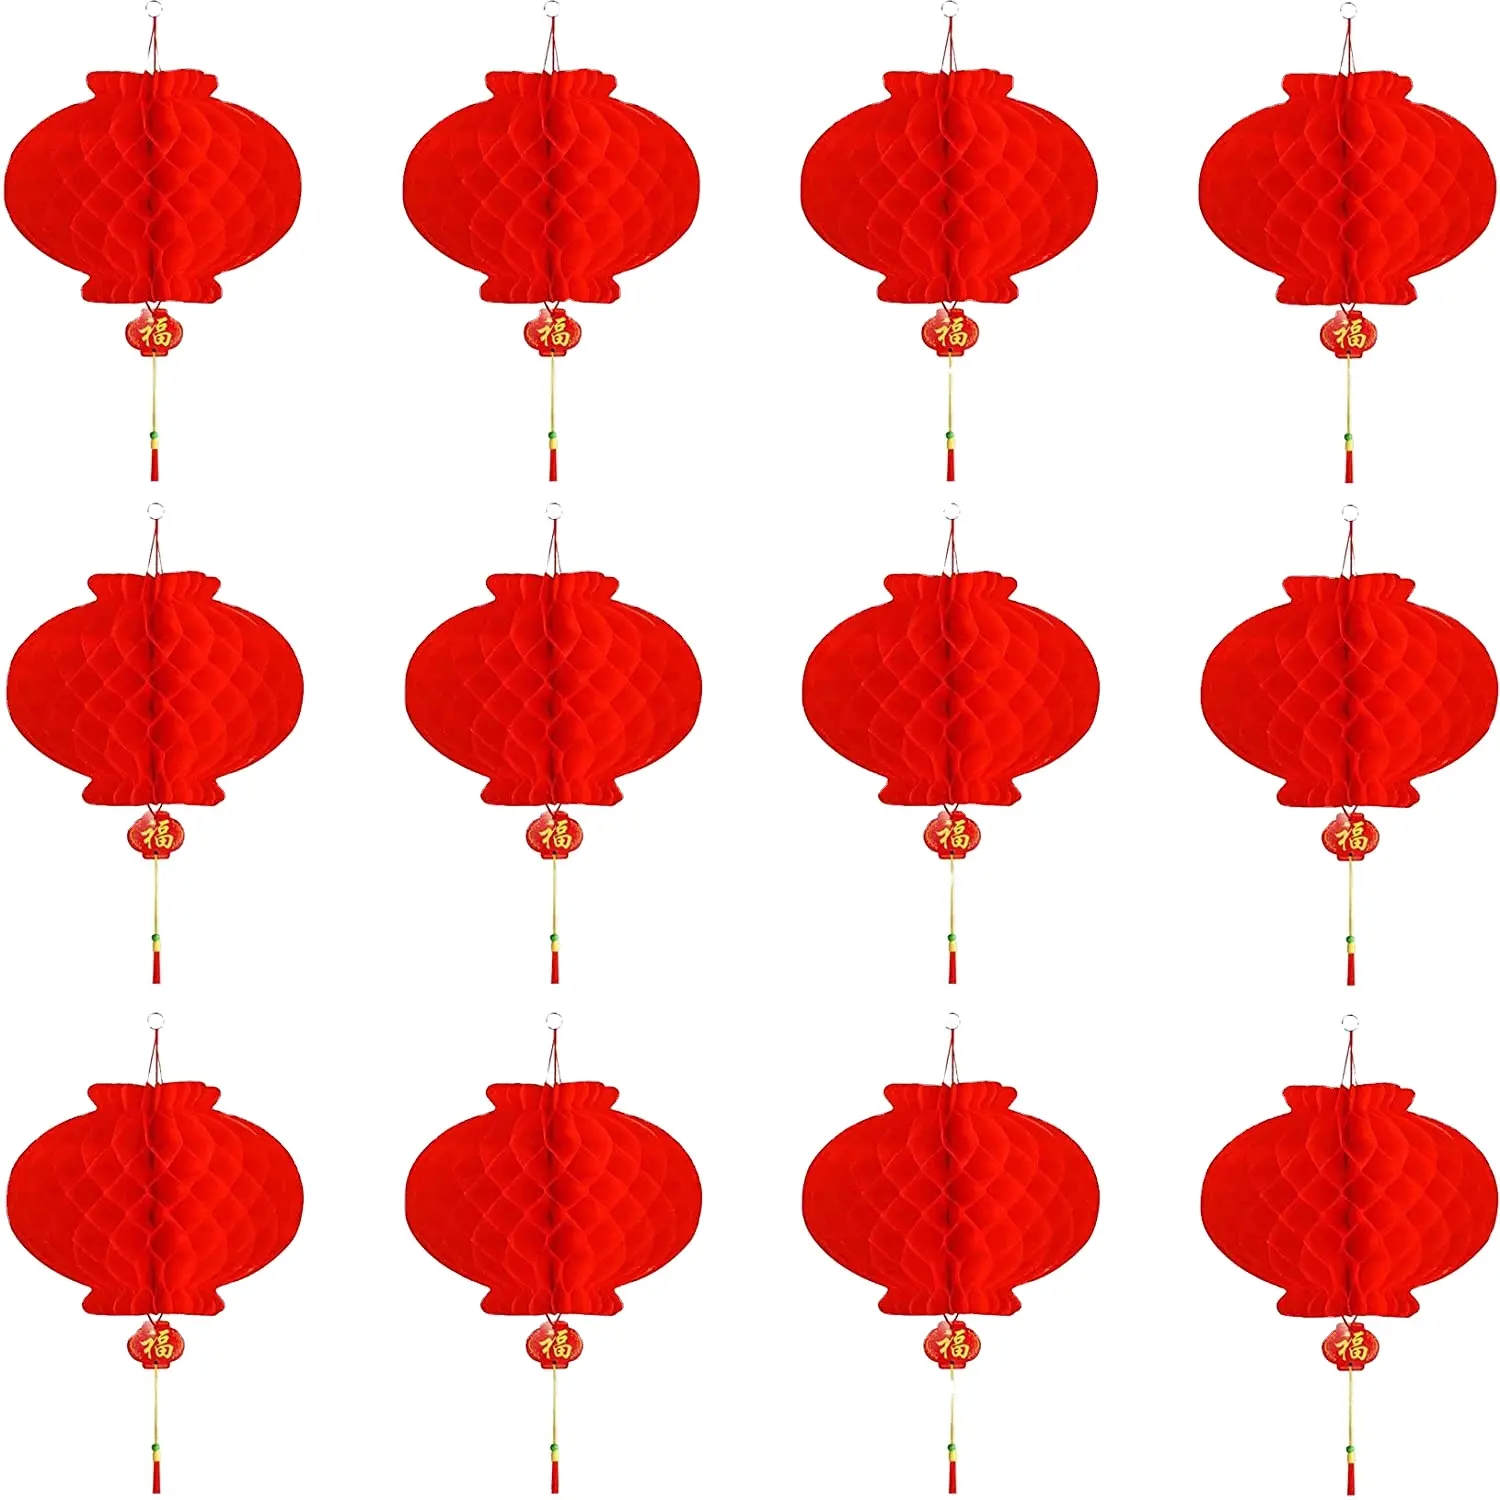 Đèn Lồng Giấy Đỏ-12 chiếc treo đèn lồng Trung Quốc trang trí năm mới của Trung Quốc cho Lễ Hội Mùa Xuân